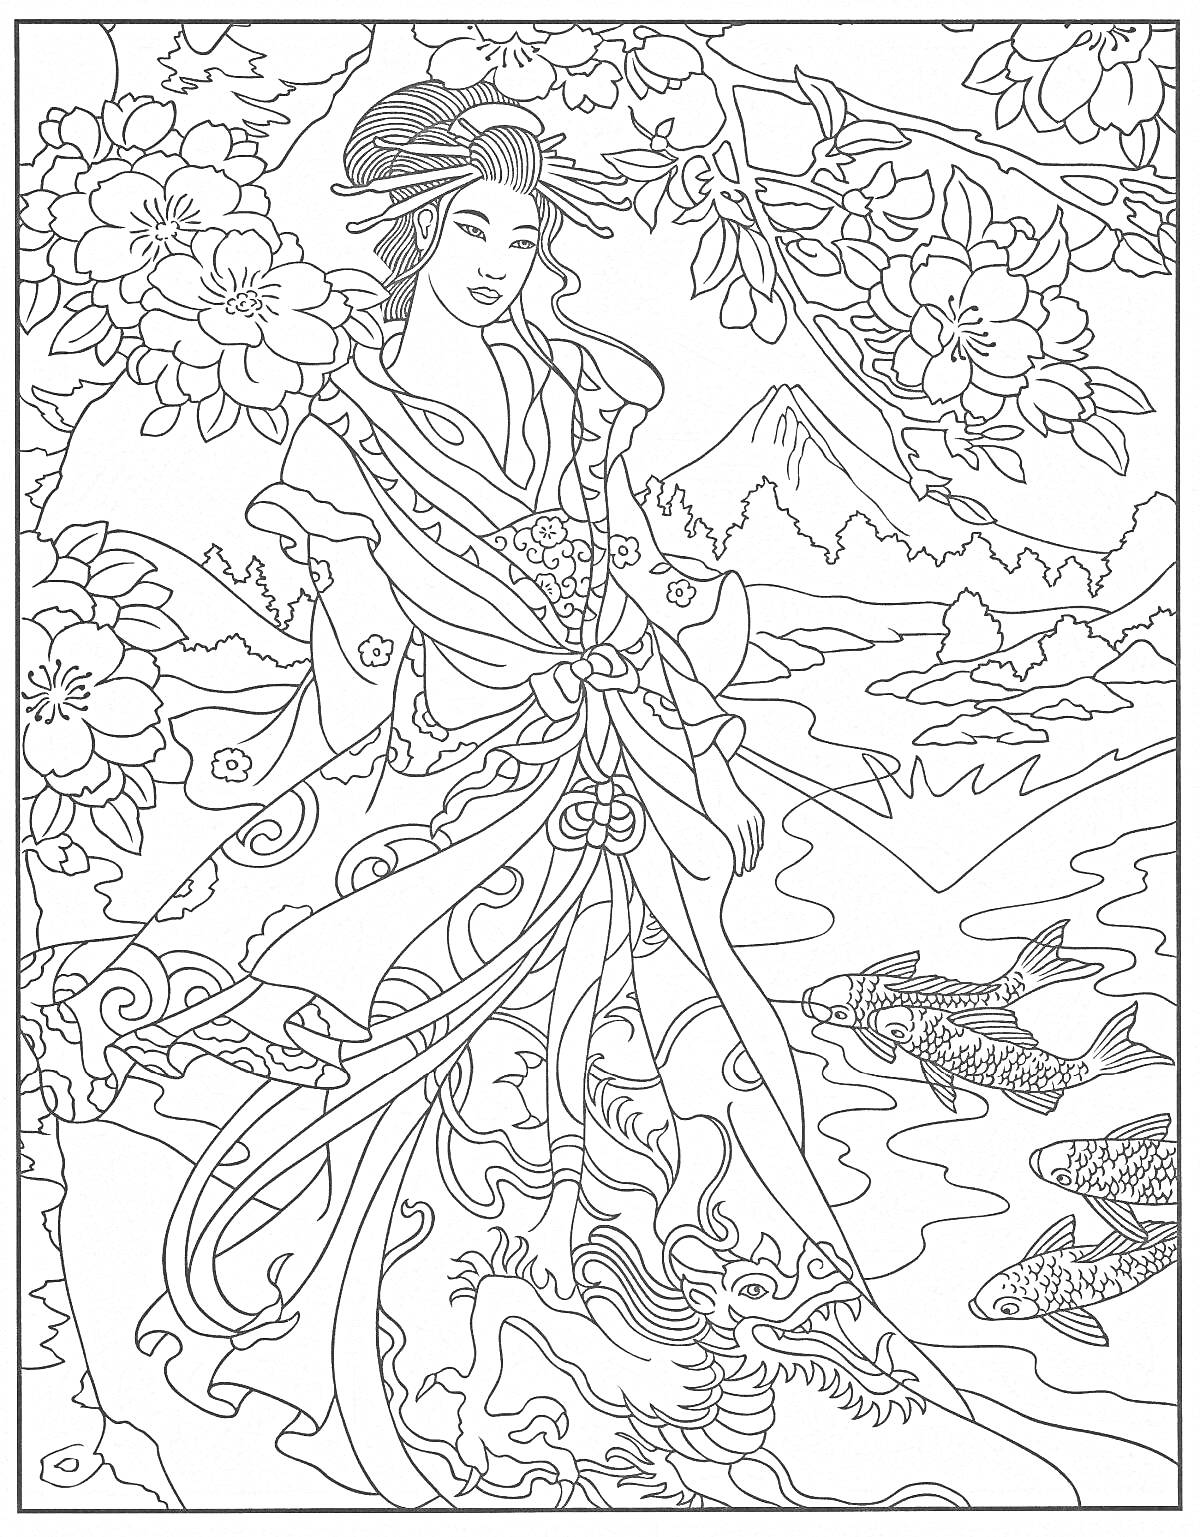 Женщина в традиционной японской одежде под цветущими деревьями, река с рыбами кои на фоне горы Фудзи